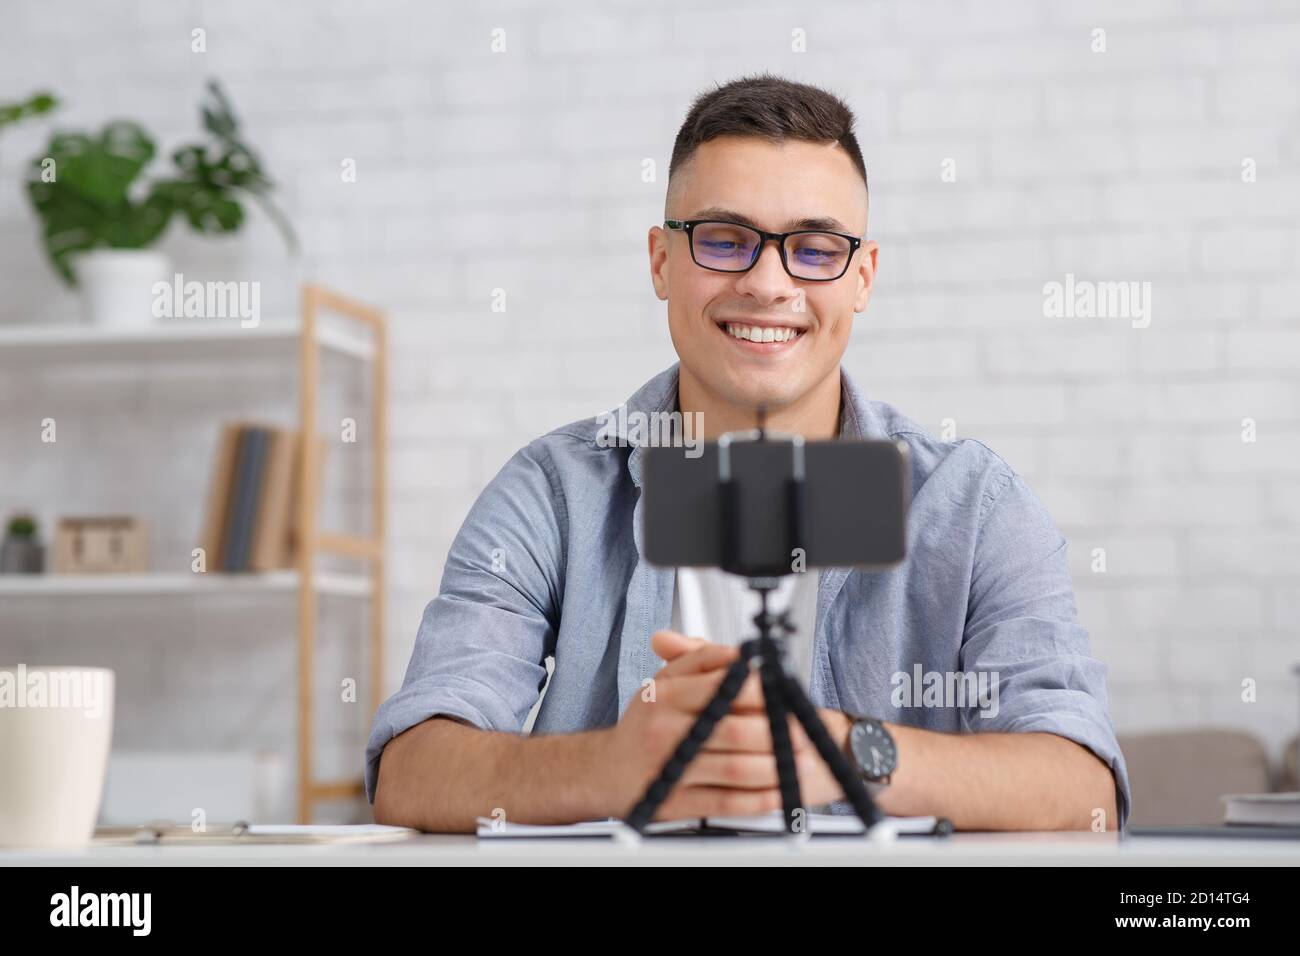 Moderne Arbeit von zu Hause aus während covid-19 Ausbruch. Lächelnder Mann mit Brille schaut auf das Smartphone auf dem Stativ und macht Aufnahme oder Videoanruf Stockfoto